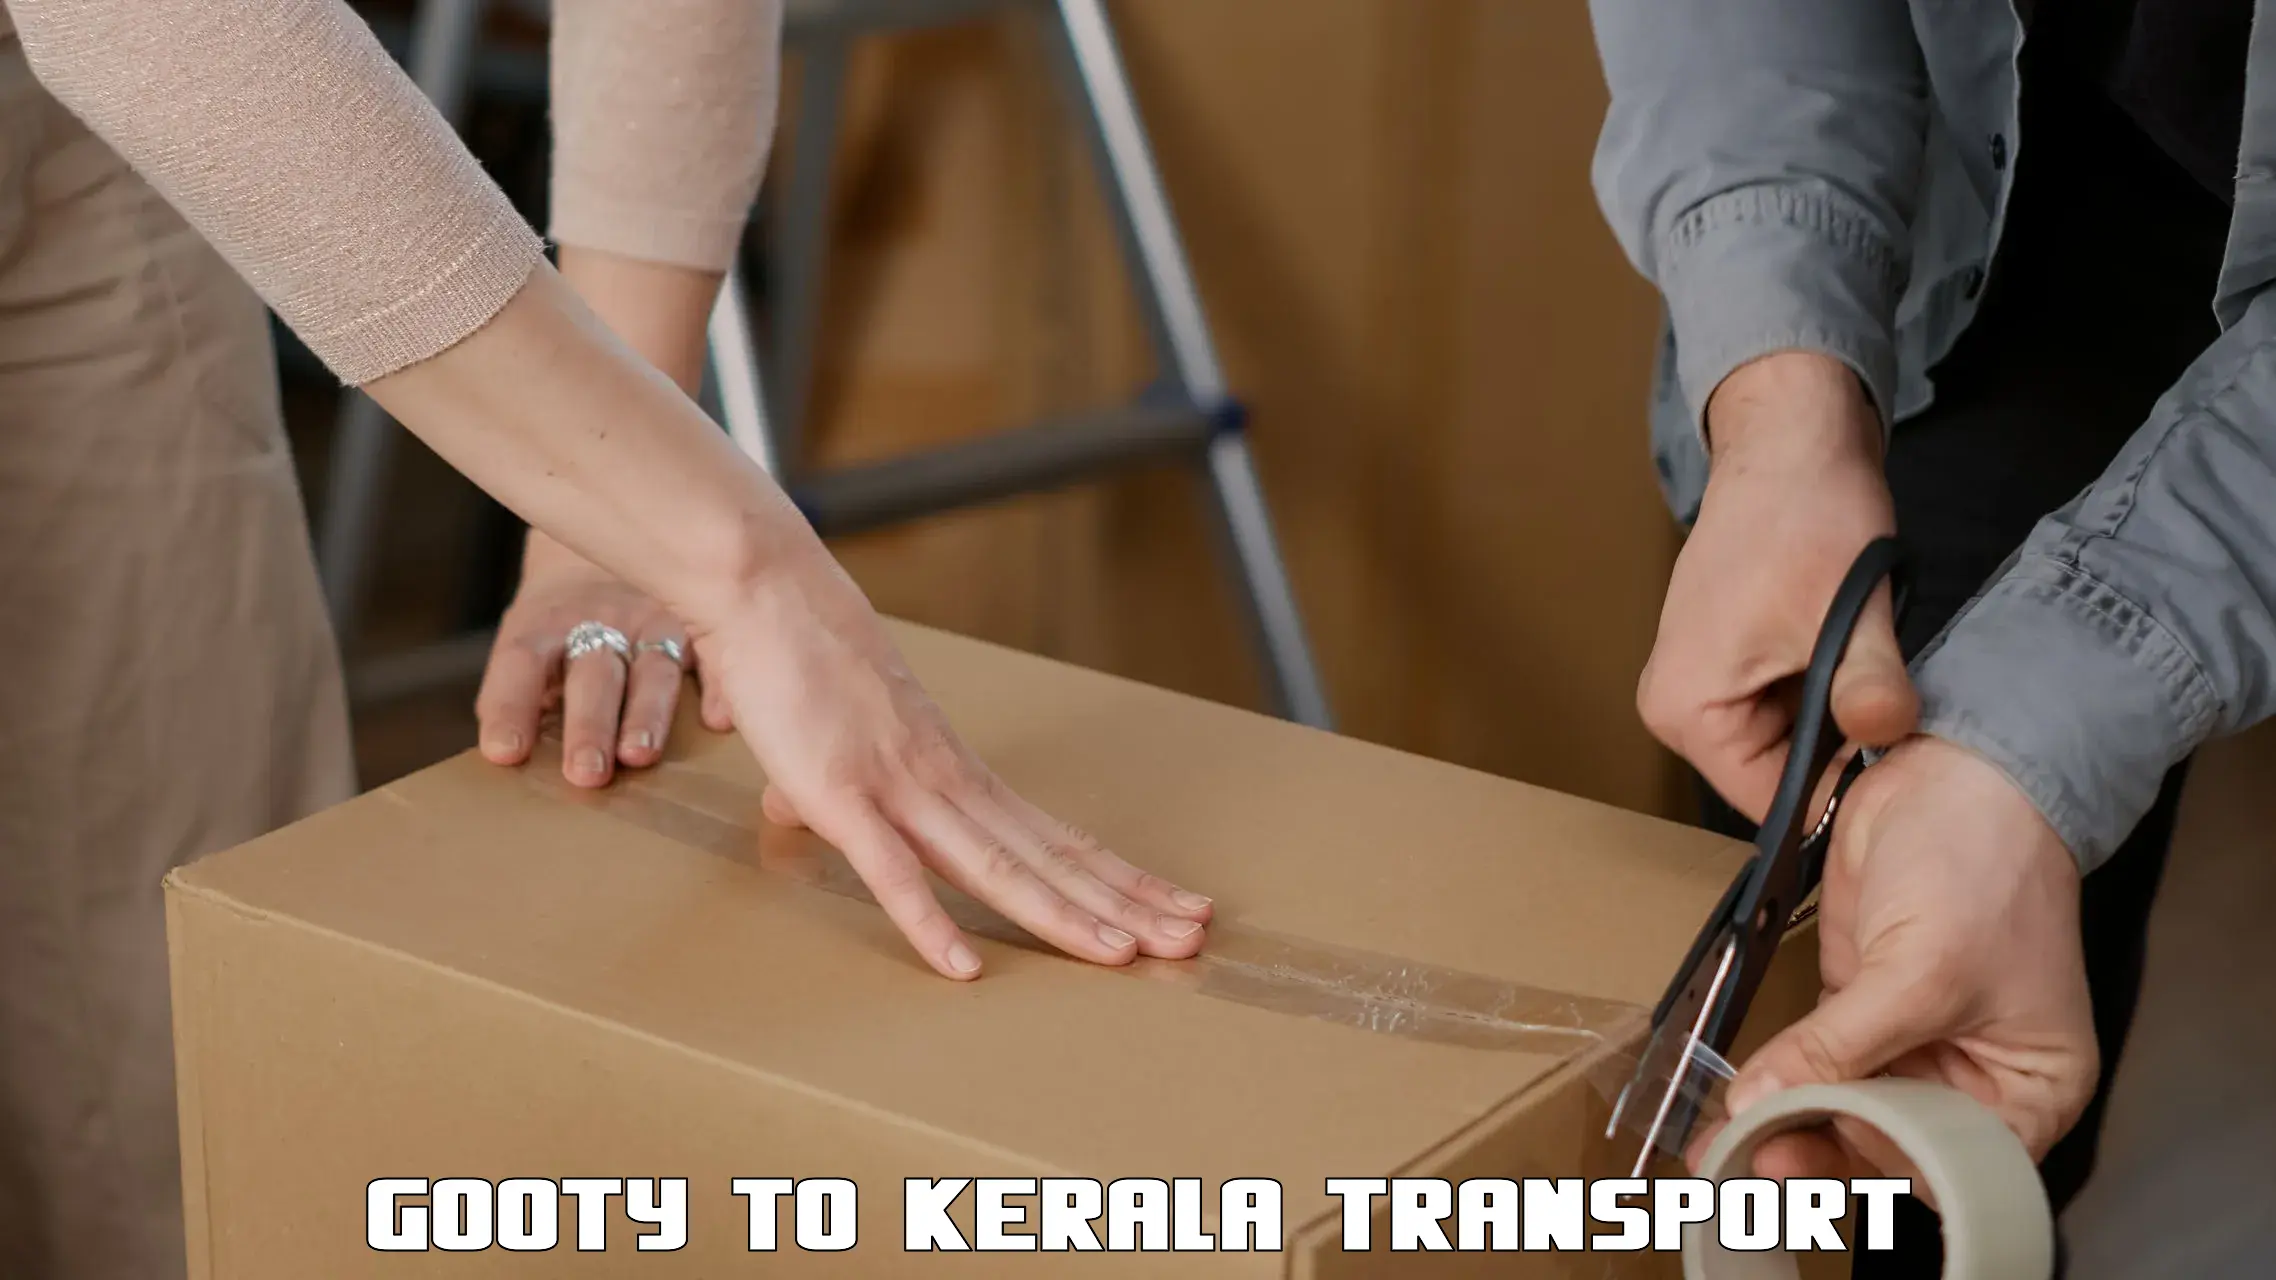 All India transport service Gooty to Kerala